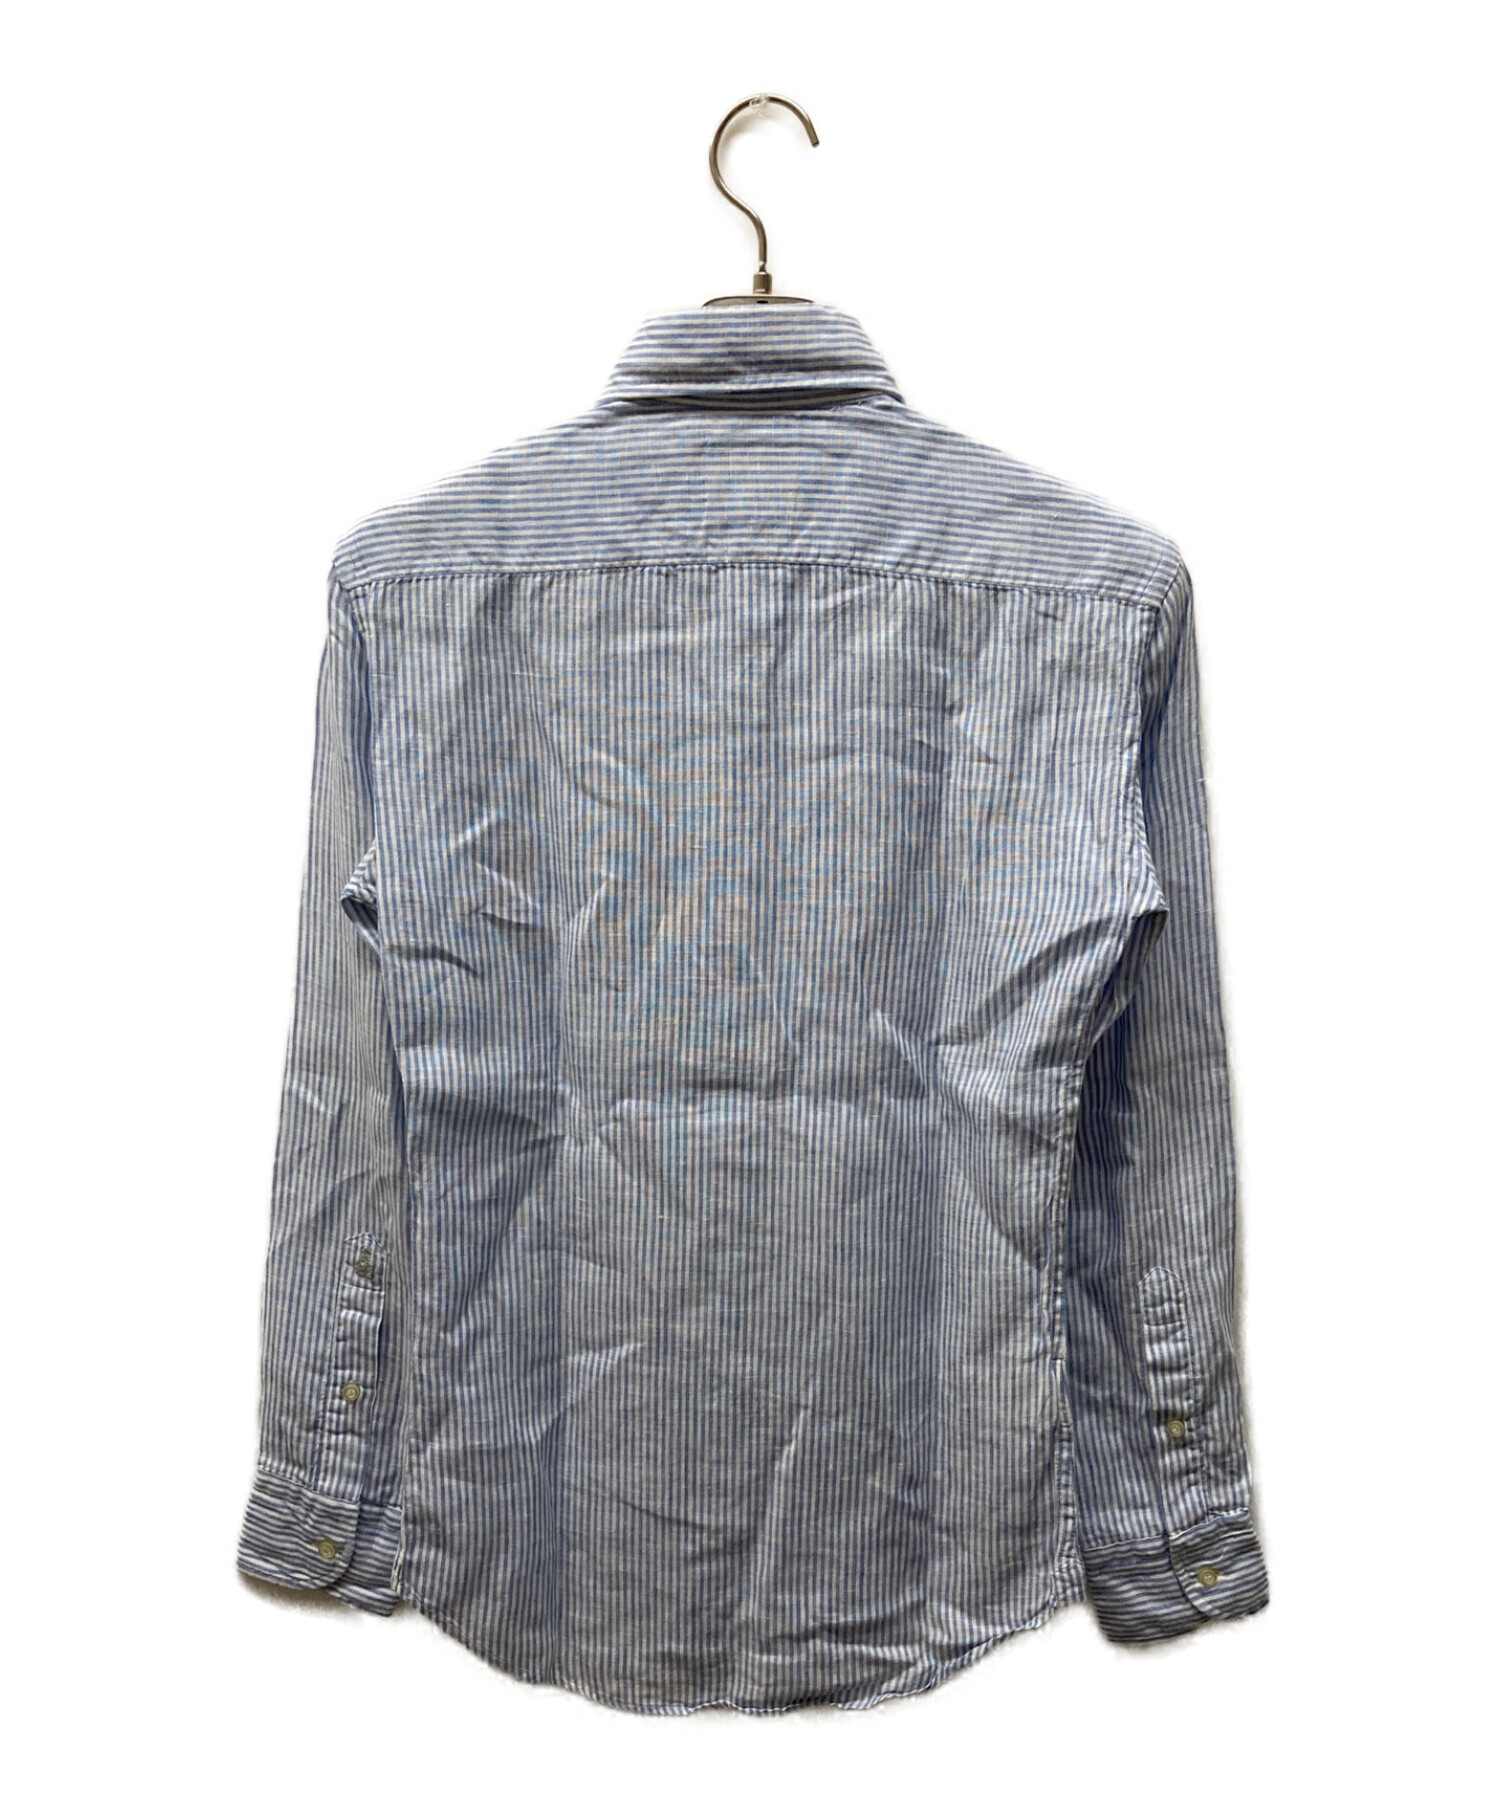 GUY ROVER (ギローバー) ストライプリネンワイドカラーシャツ ドレスシャツ リネンシャツ ブルー サイズ:XS